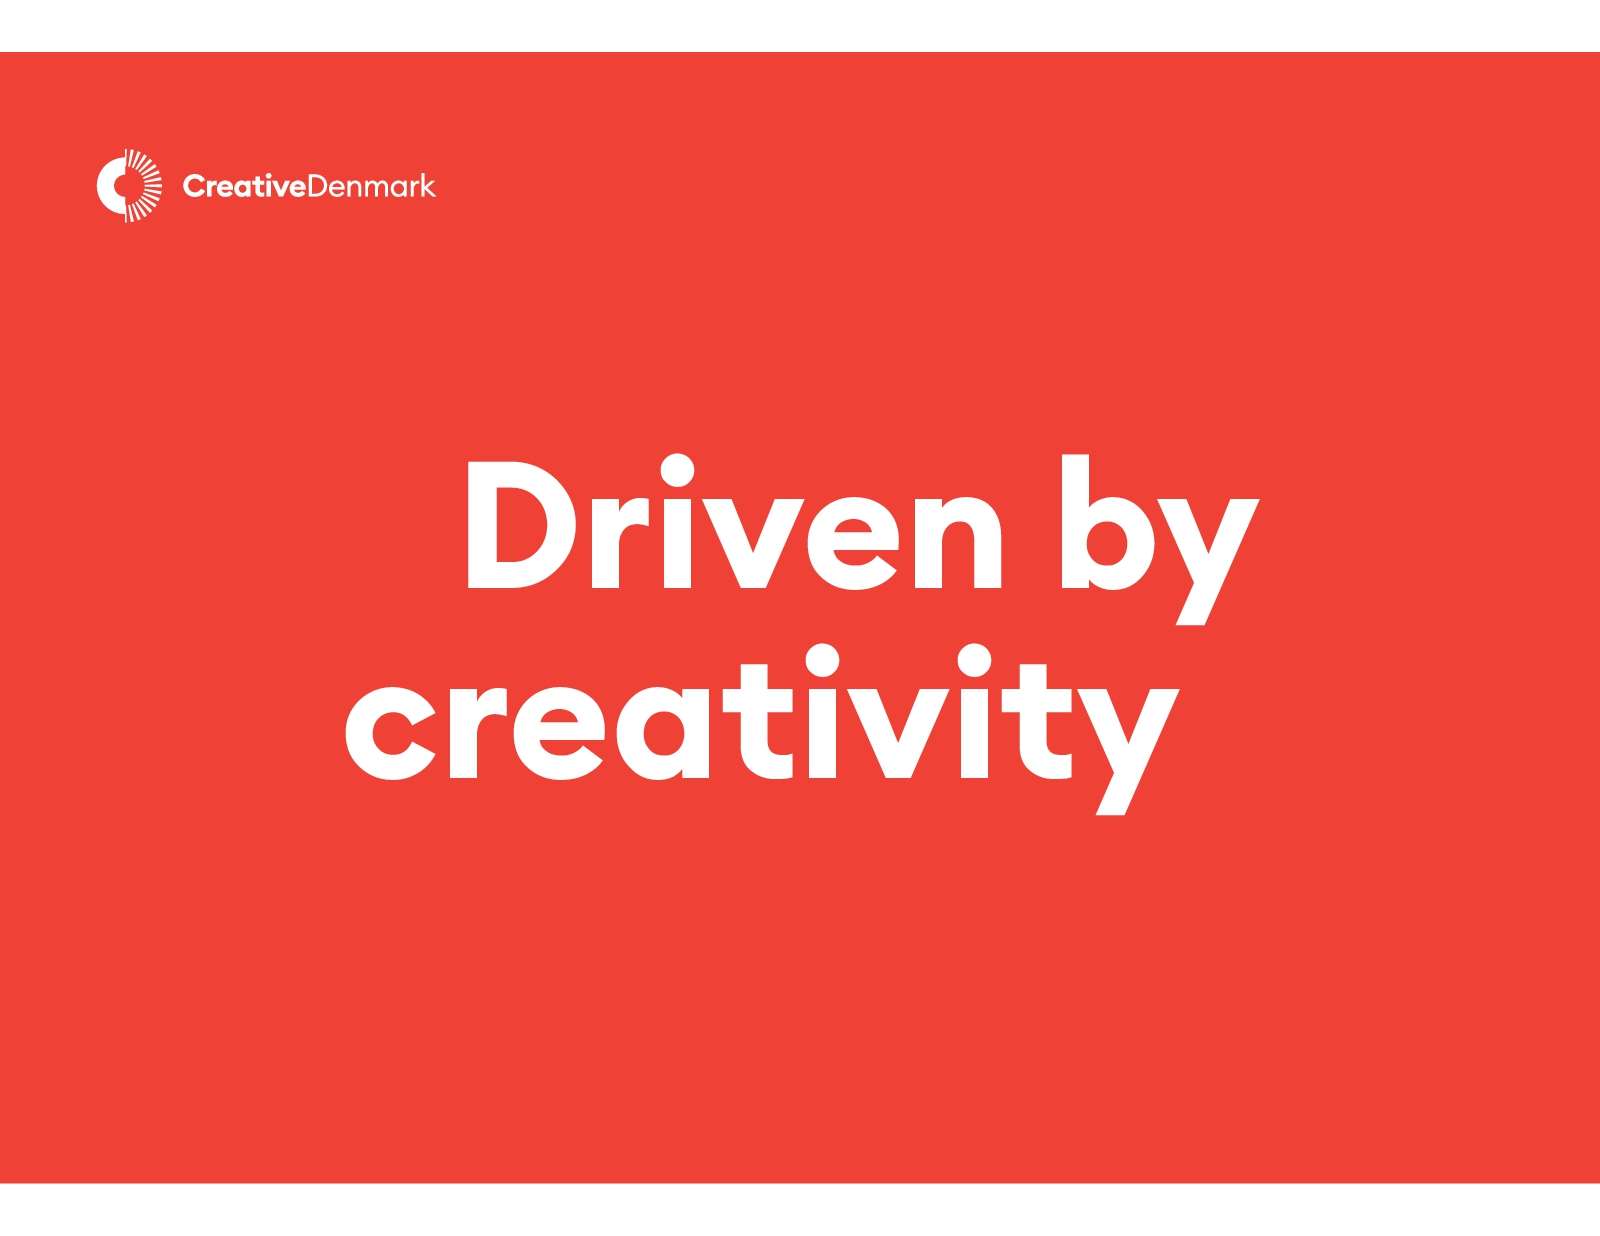 The Danish creative DNA by Creative Denmark